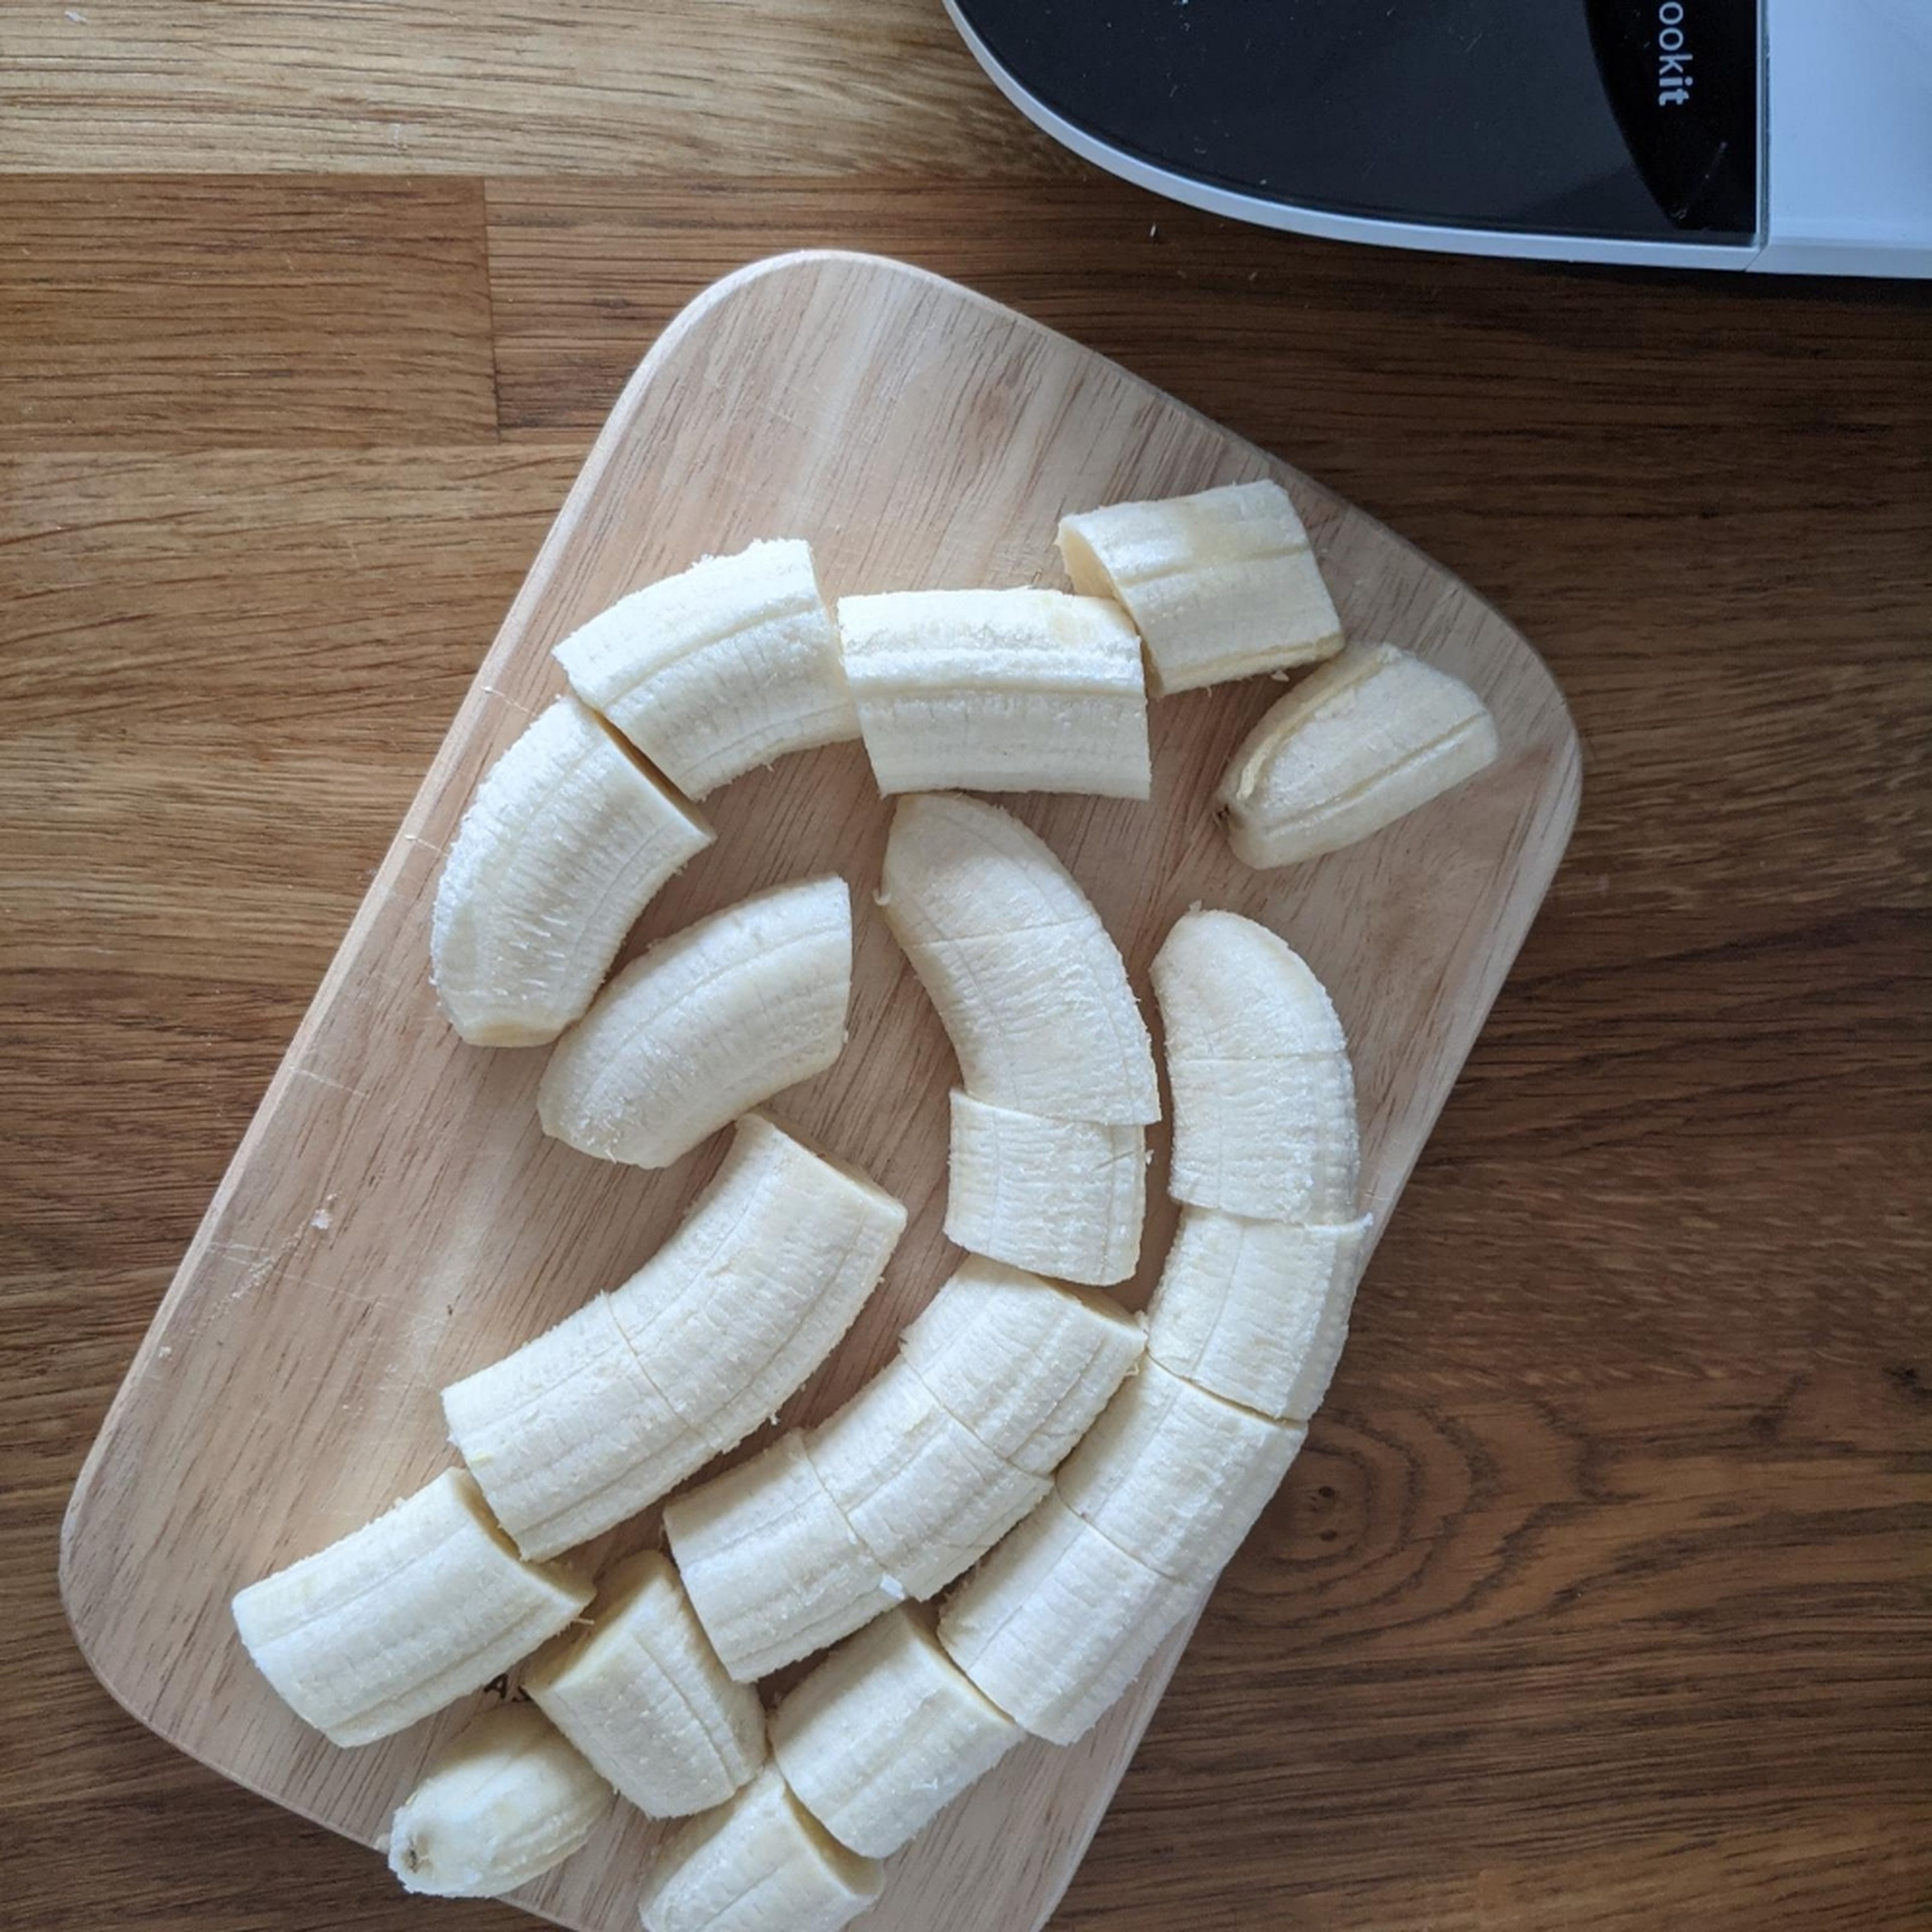 Die (reifen) Bananen in Stücke schneiden und in einer Frischhaltedose für mindestens 6 Stunden einfrieren.